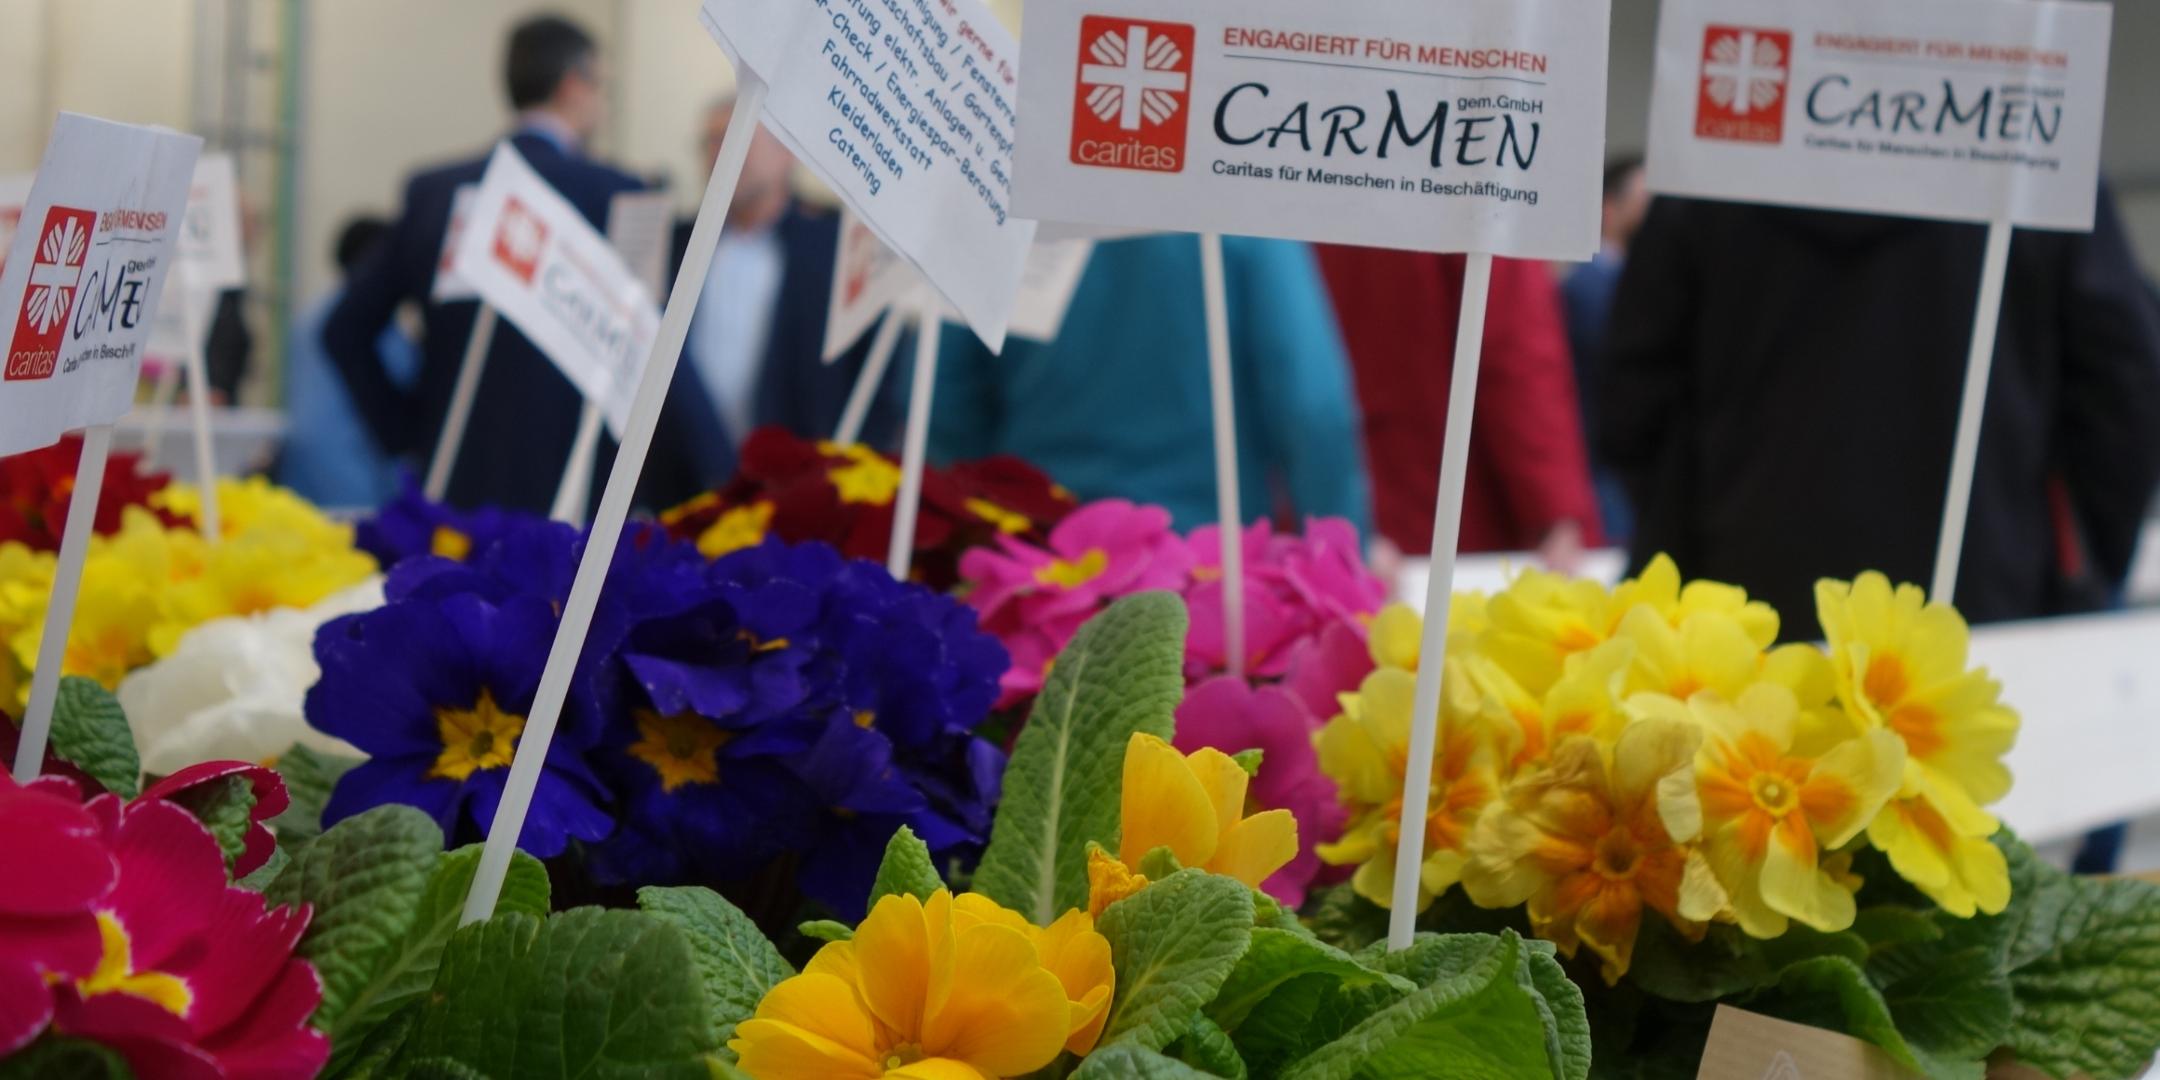 Blumen stehen auf einem Tisch, darin Zettel auf denen CarMen gGmbH steht.